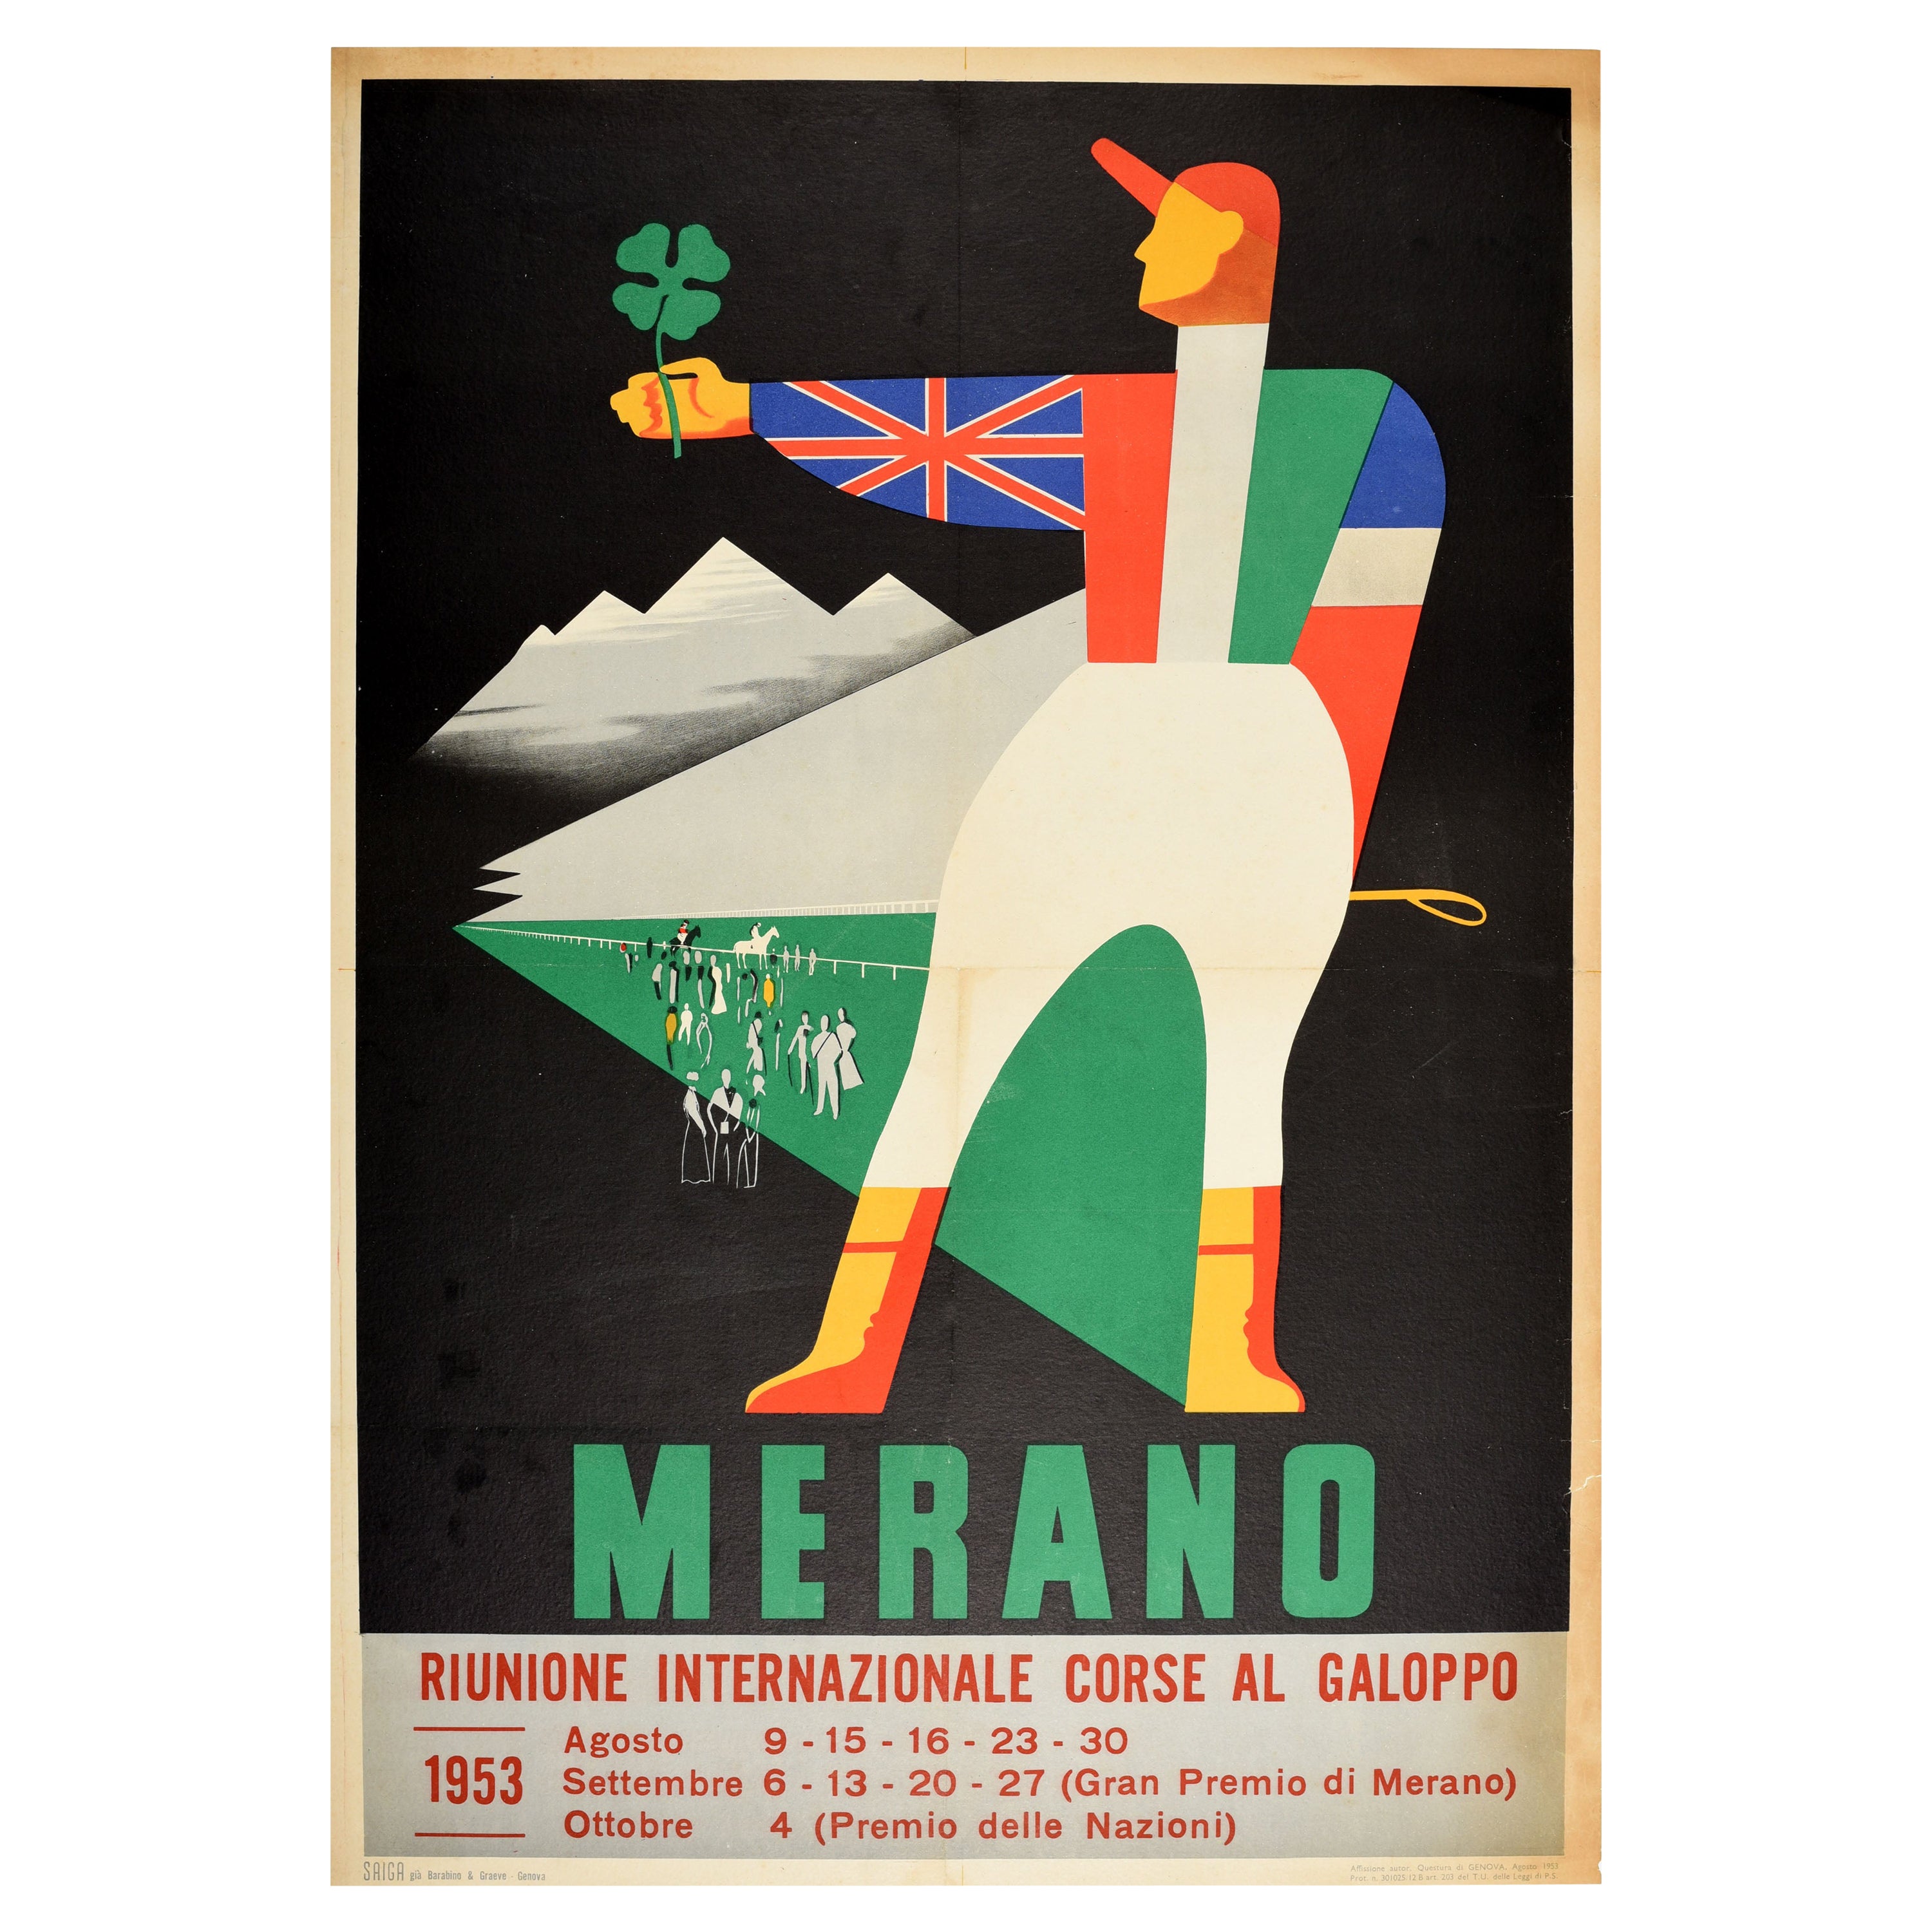 Original Vintage Sport Poster Merano Corse Al Galoppo Italy Gallop Horse Racing